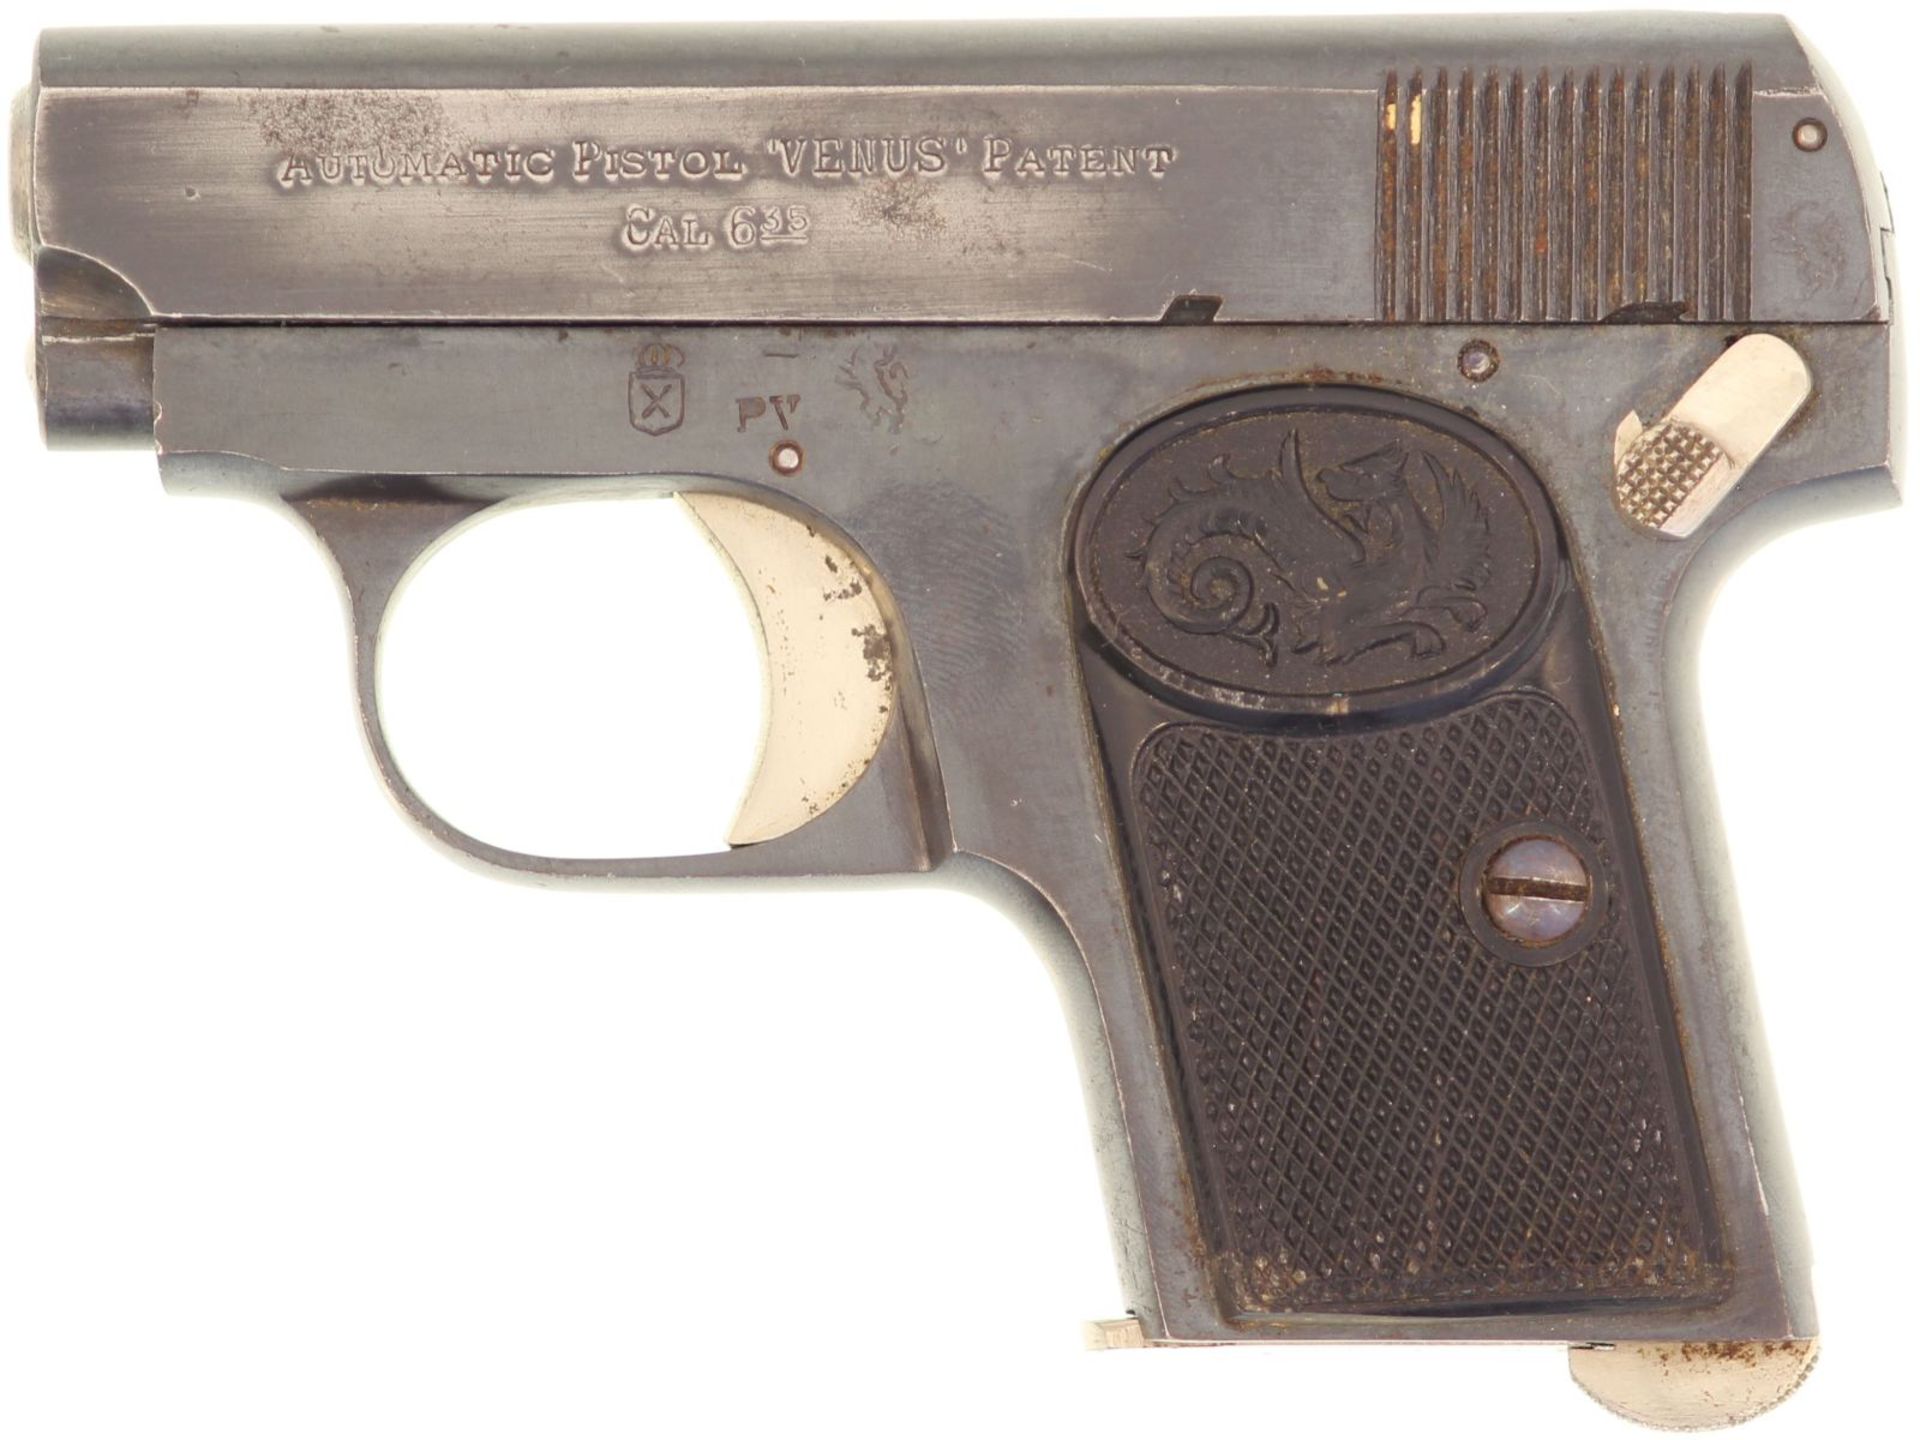 Taschenpistole, Venus, Kal. 6.35mm. Brünierte Waffe mit Schlagbolzenschloss Eibar Typ, hergestellt